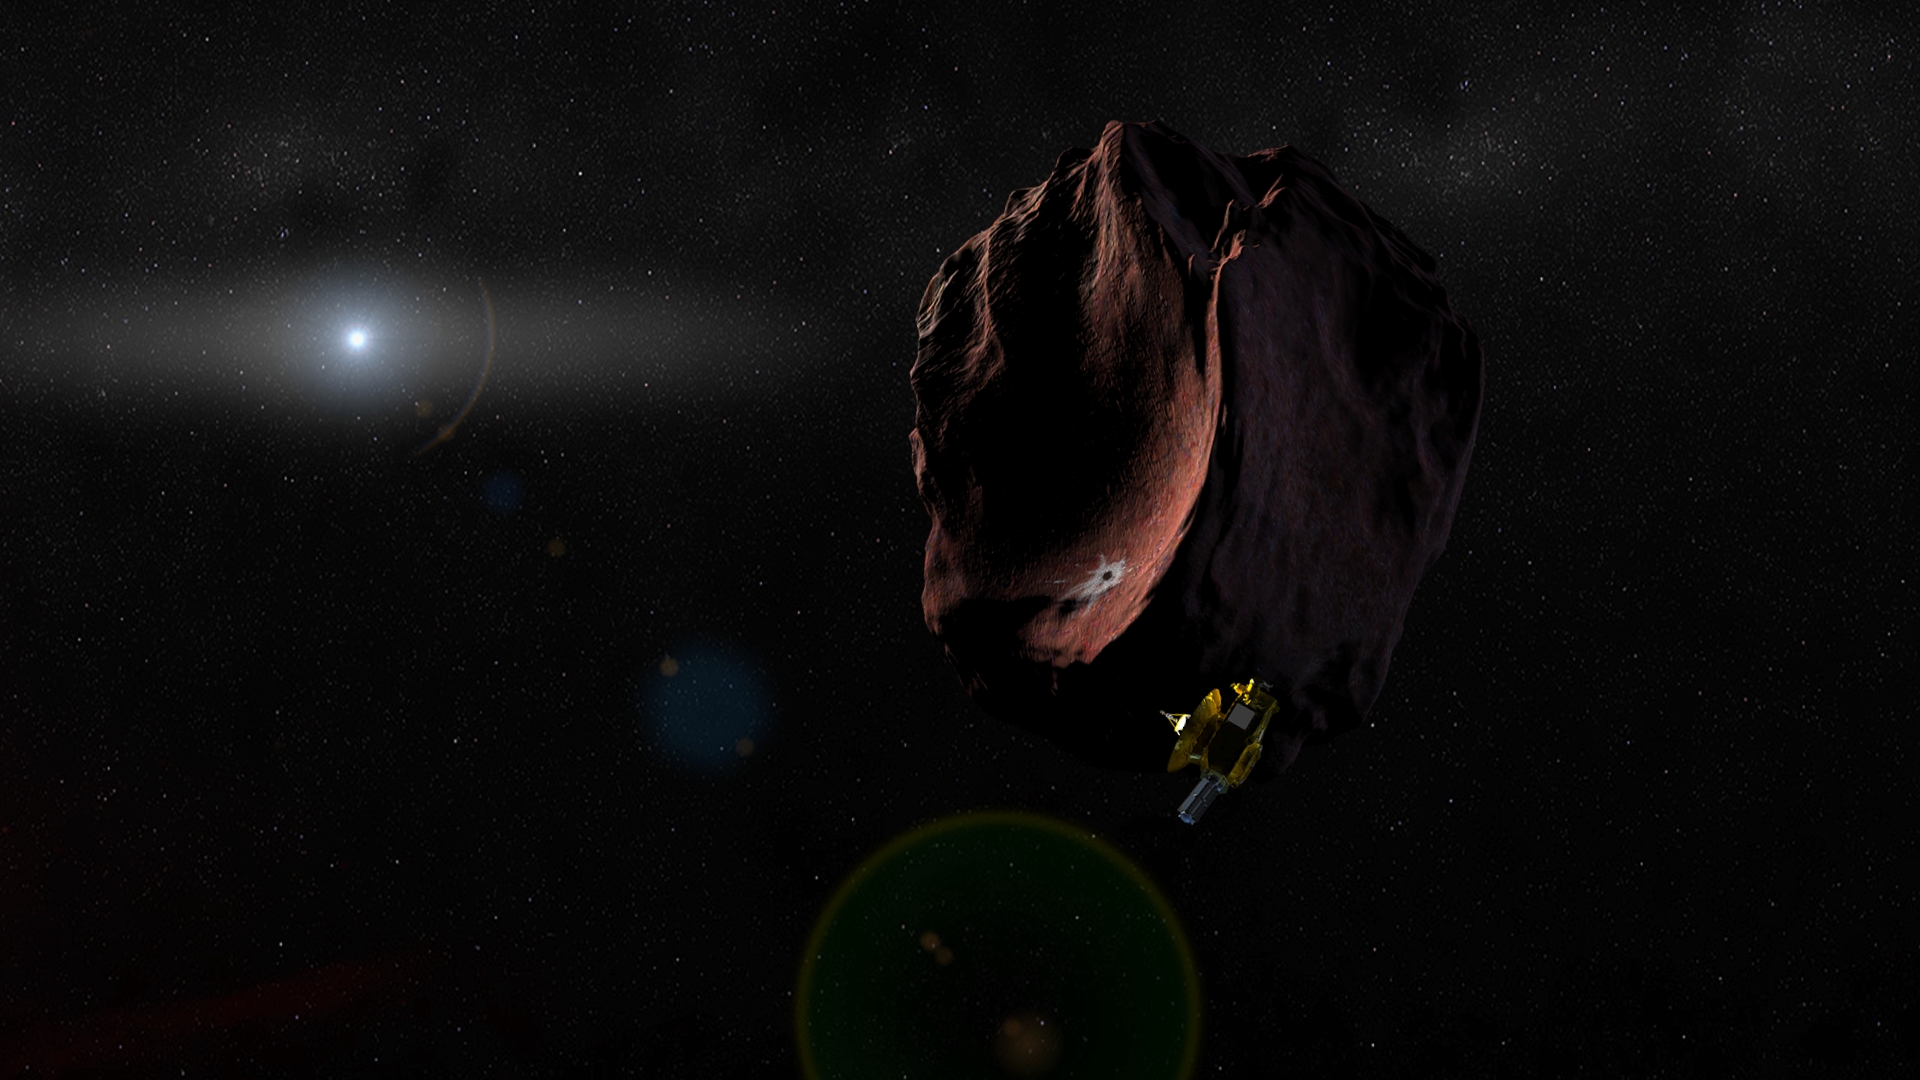 New Horizons in the Kuiper Belt